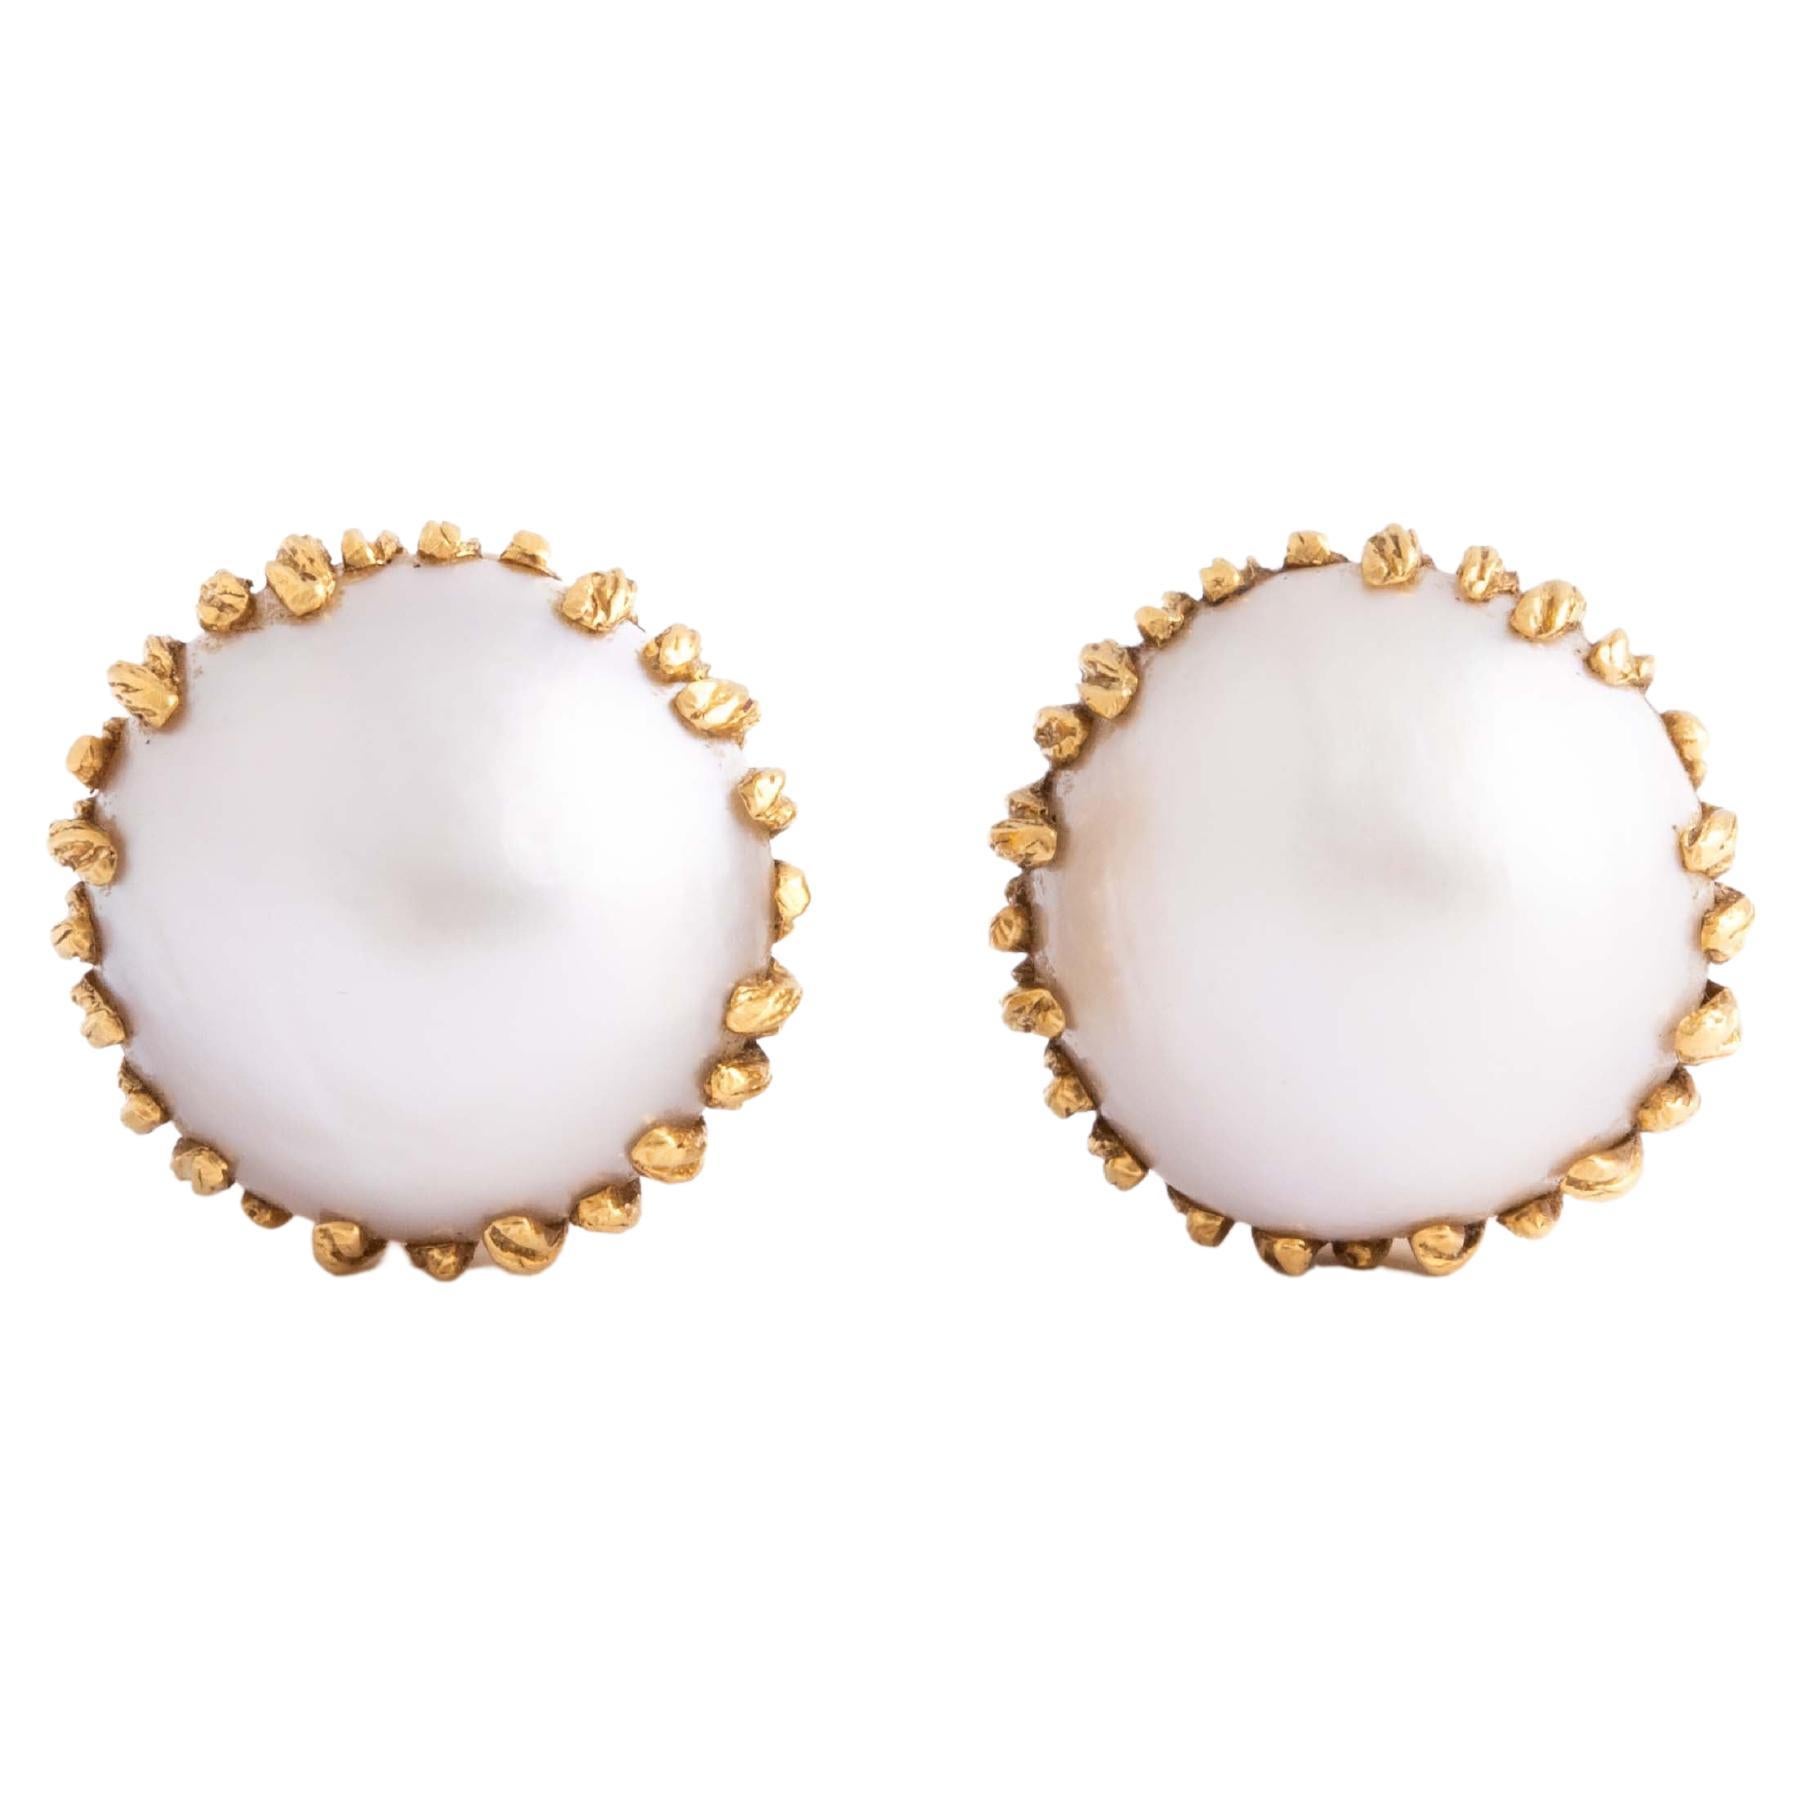 Perlen-Ohrringe aus 18 Karat Gelbgold